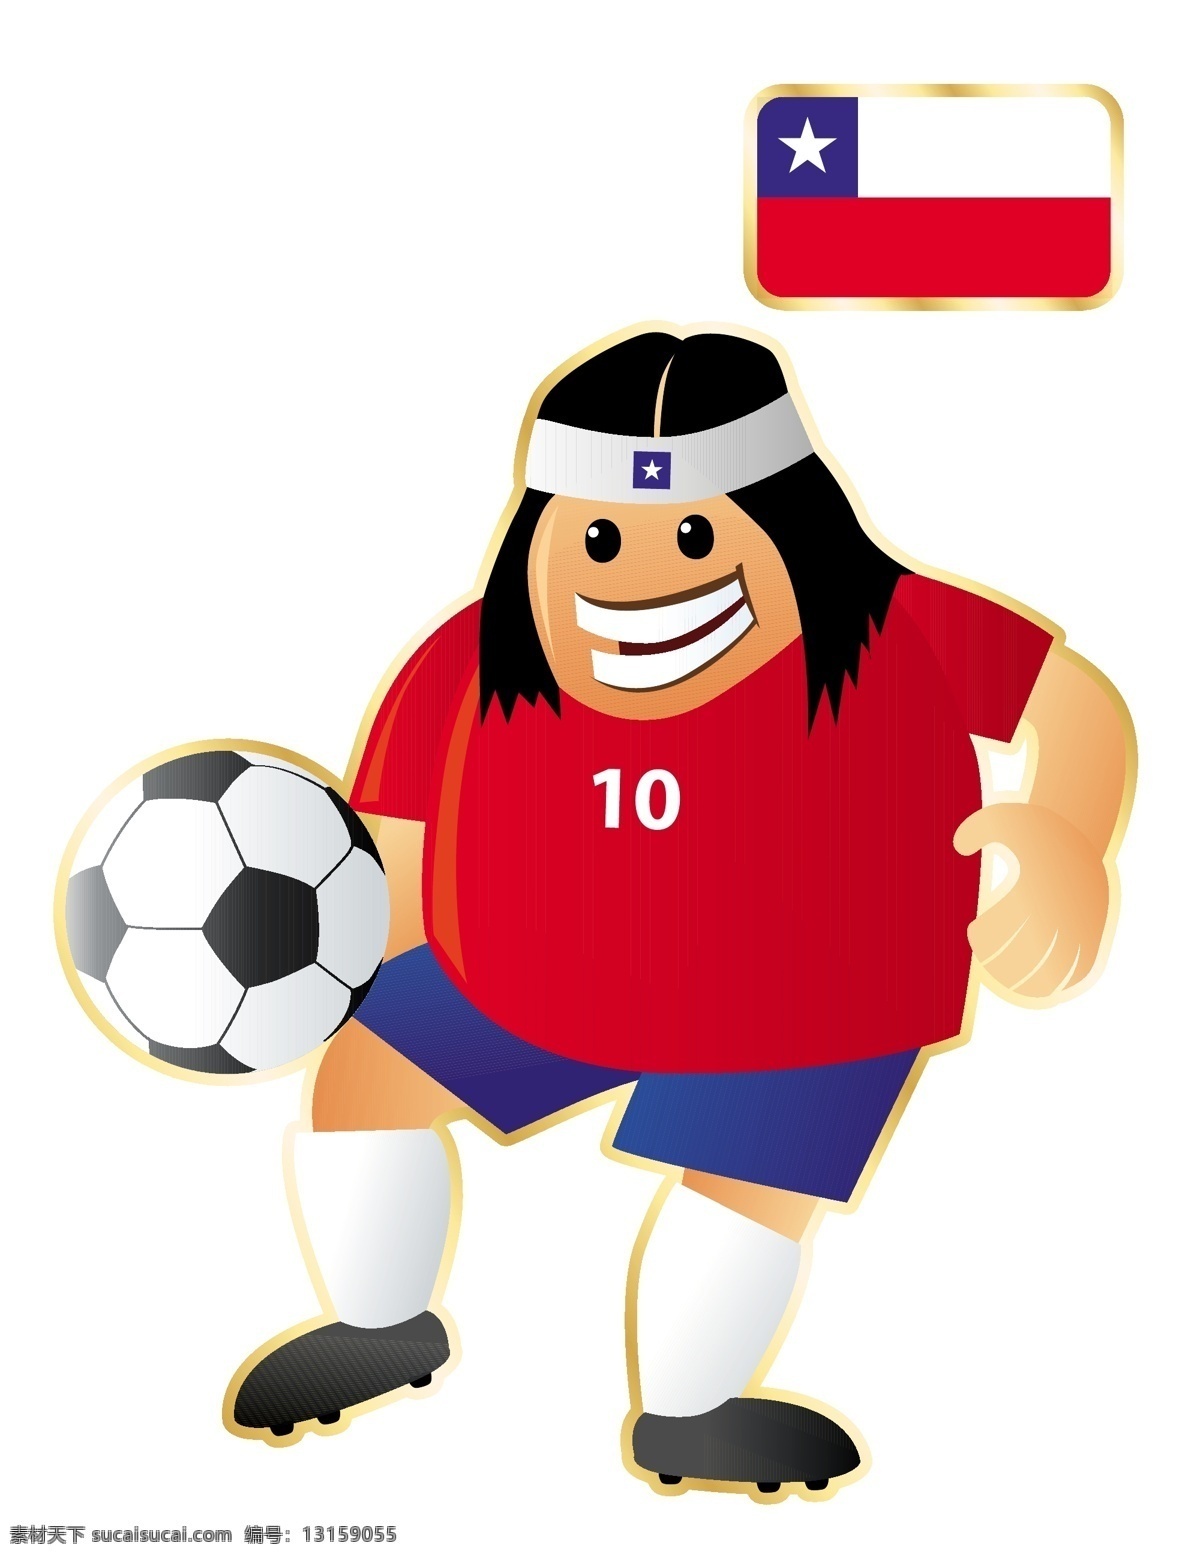 踢球 足球 卡通 人物 形象 矢量图 运动员 大胖子 运动 外国 矢量 扁平化 平面